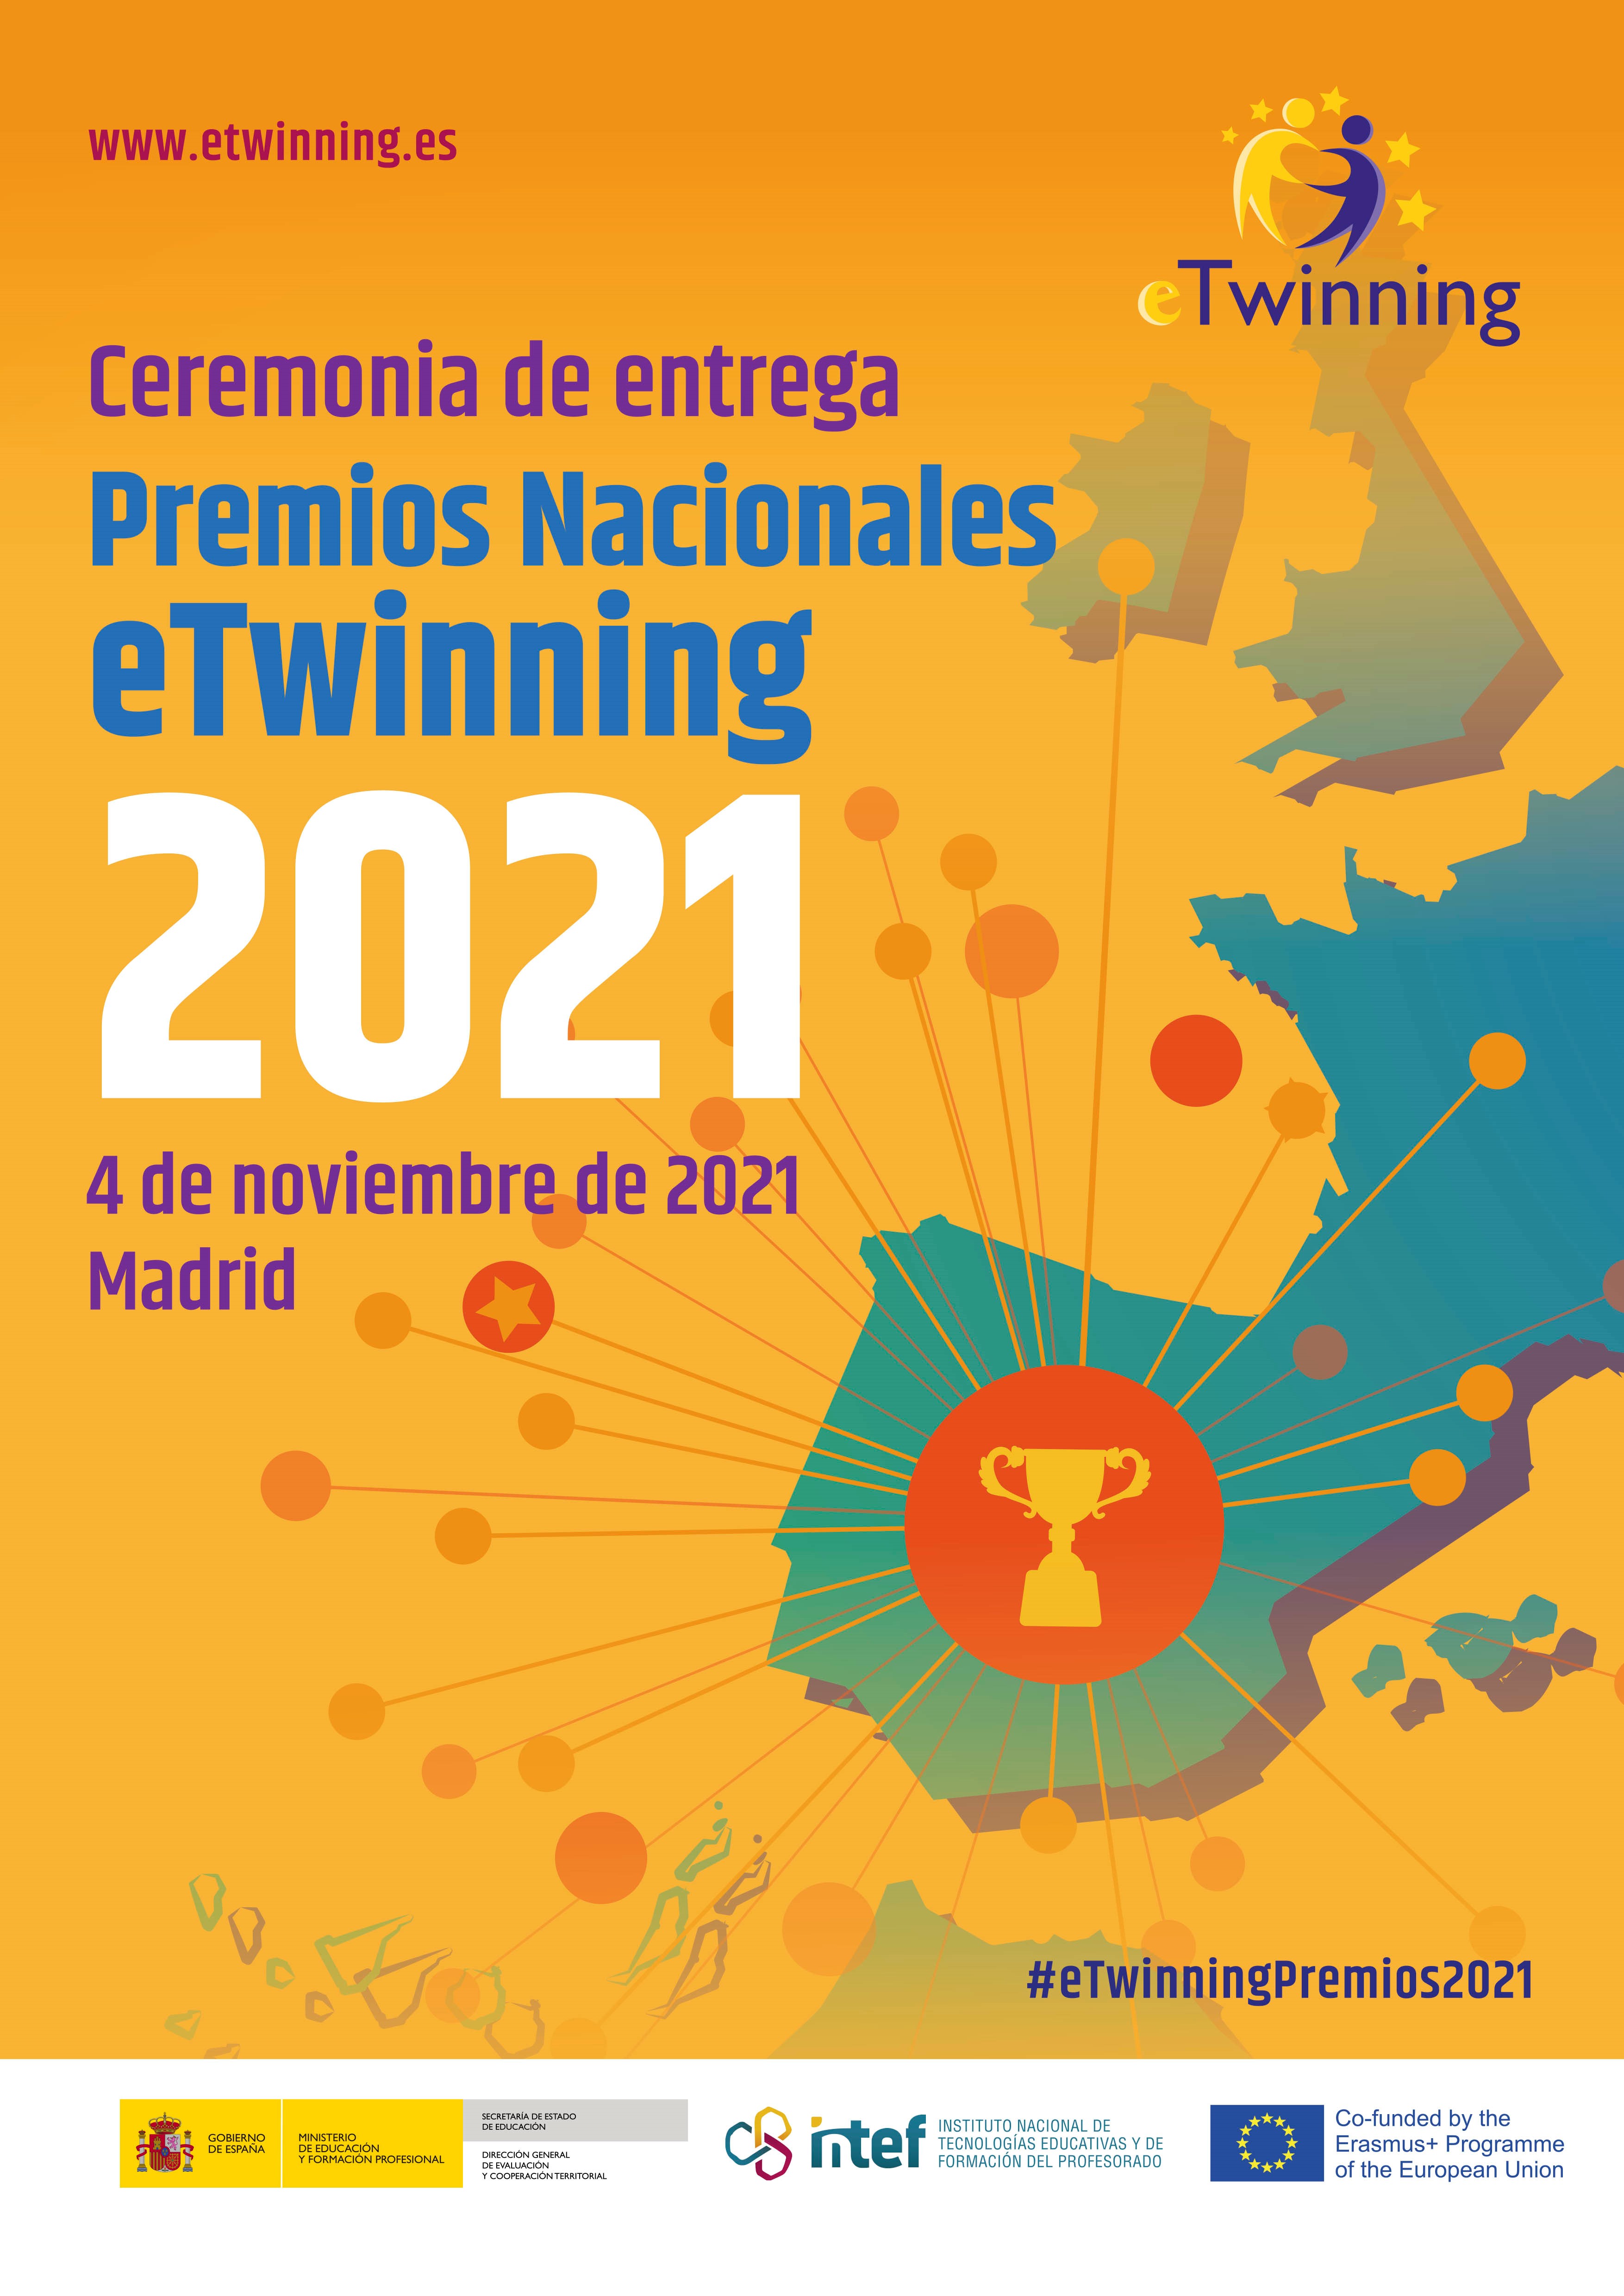 Presencia navarra en la ceremonia de entrega de los premios nacionales eTwinning 2021